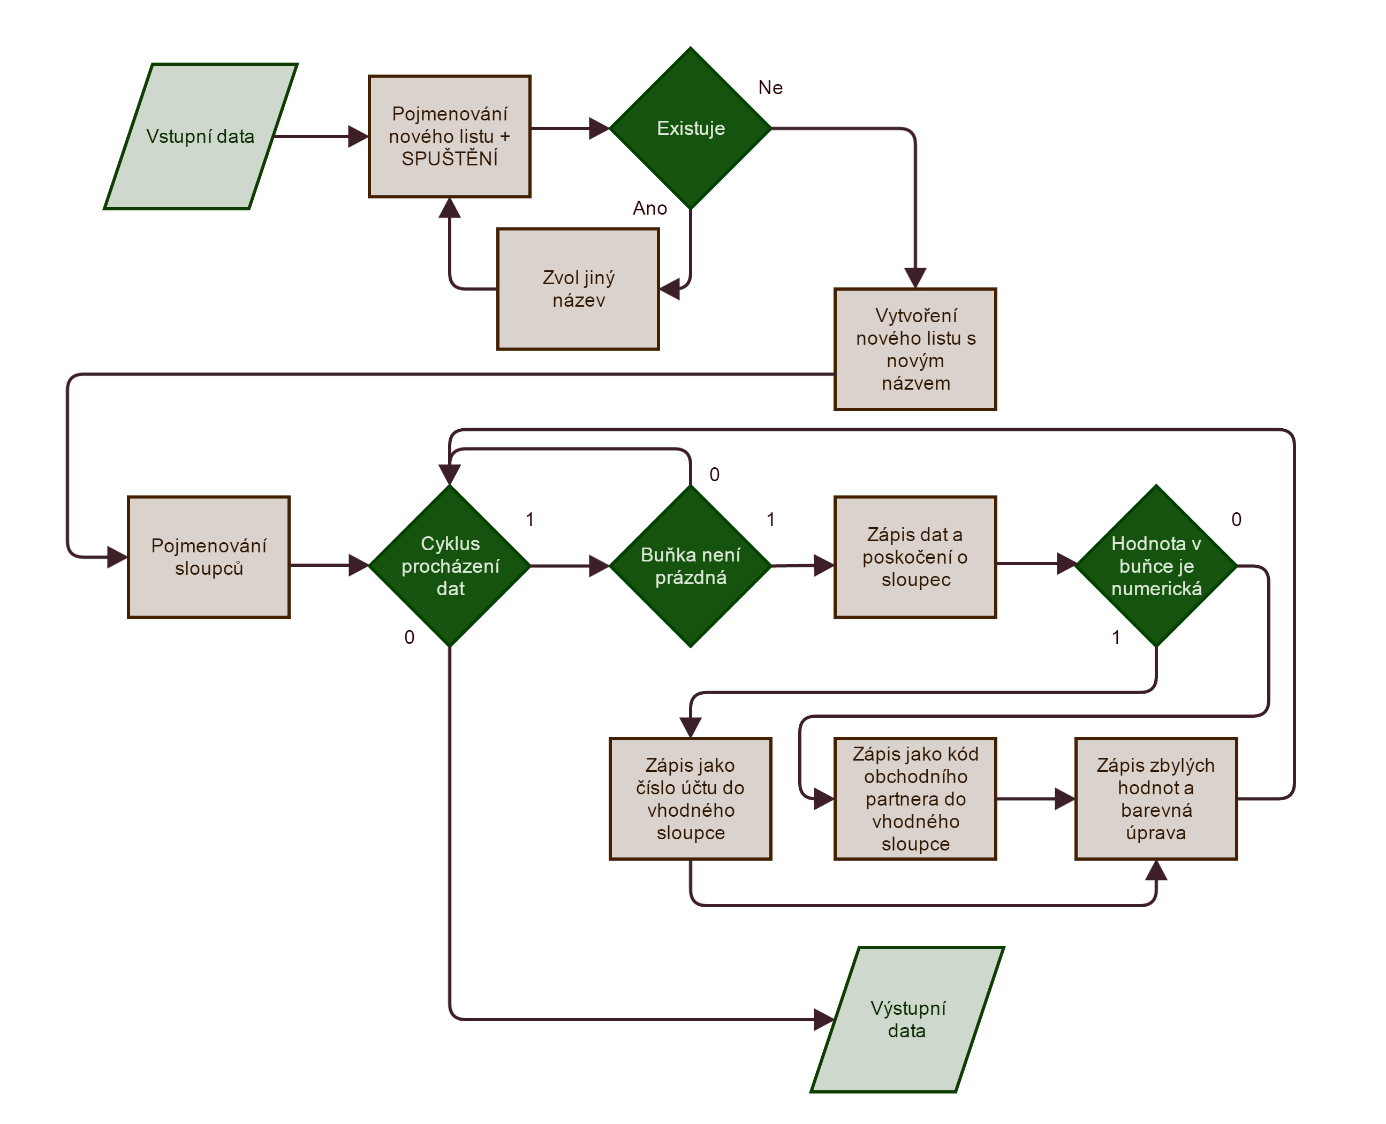 2.3.1.2. Návrh zpracování dat Obrázek 4 - Vývojový diagram popisující celý proces zpracování dat ze systému SAP. Zdroj: Vlastní zpracování, obrázek byl vytvořen ve webovém prostředí na serveru gliffy.